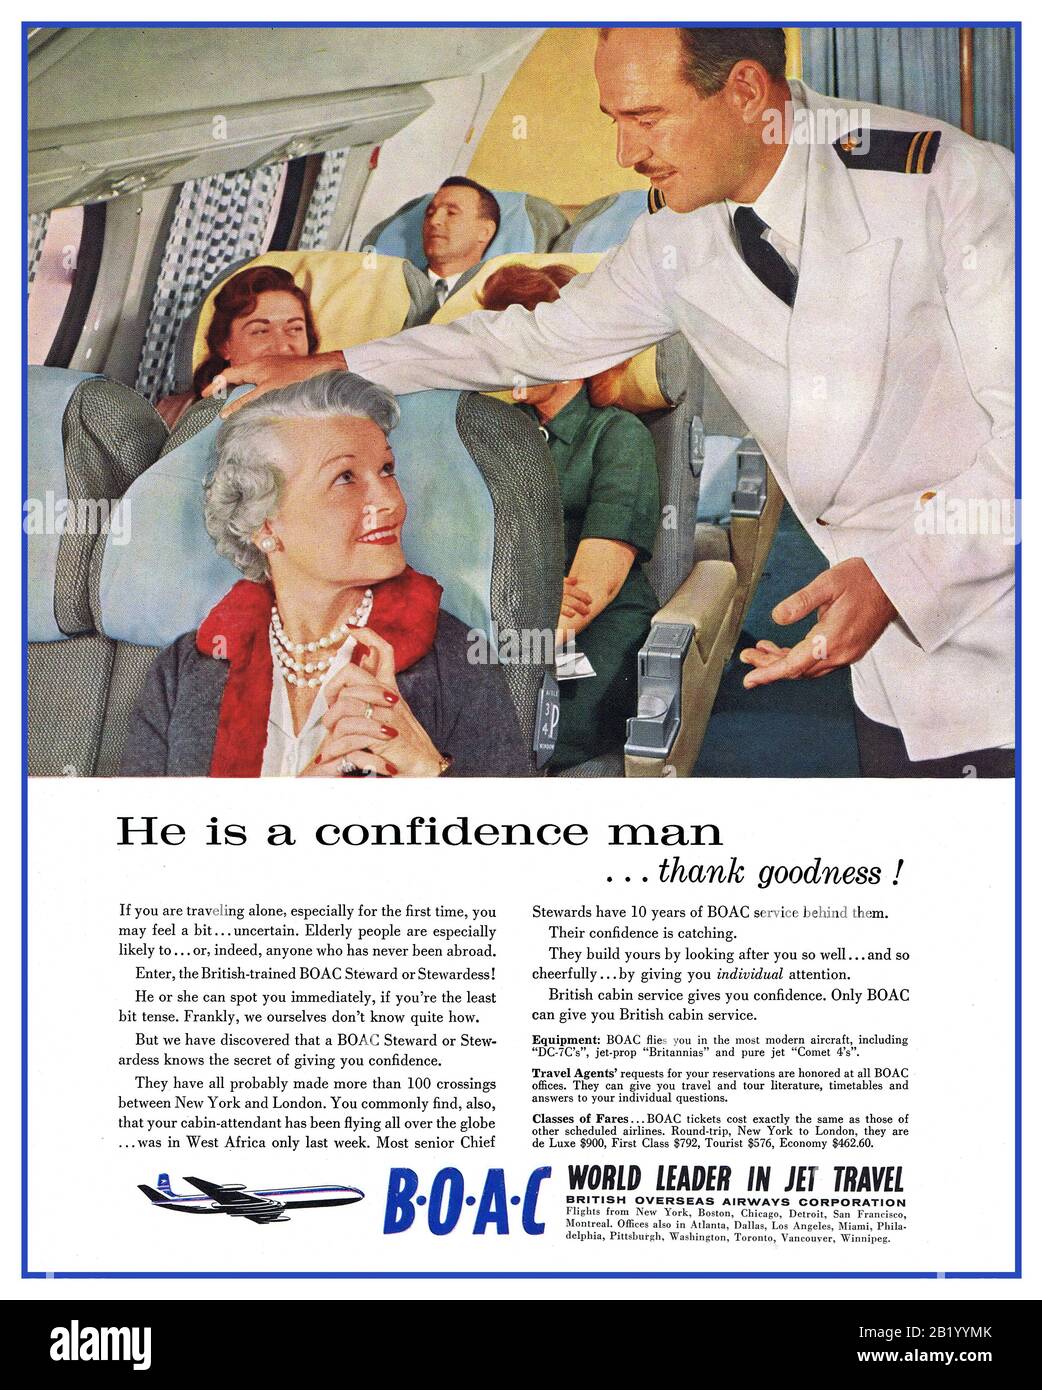 Vintage 1950/60's BOAC línea aérea anuncio ‘líder Mundial en Jet Travel’ 'Él es un hombre de confianza ..gracias a Dios' página anuncio. Edad de oro de volar, exclusivo cómodo y caro. Azafata de cabina BOAC con uniforme de chaqueta blanca, lo que proporciona tranquilidad a un pasajero maduro Foto de stock